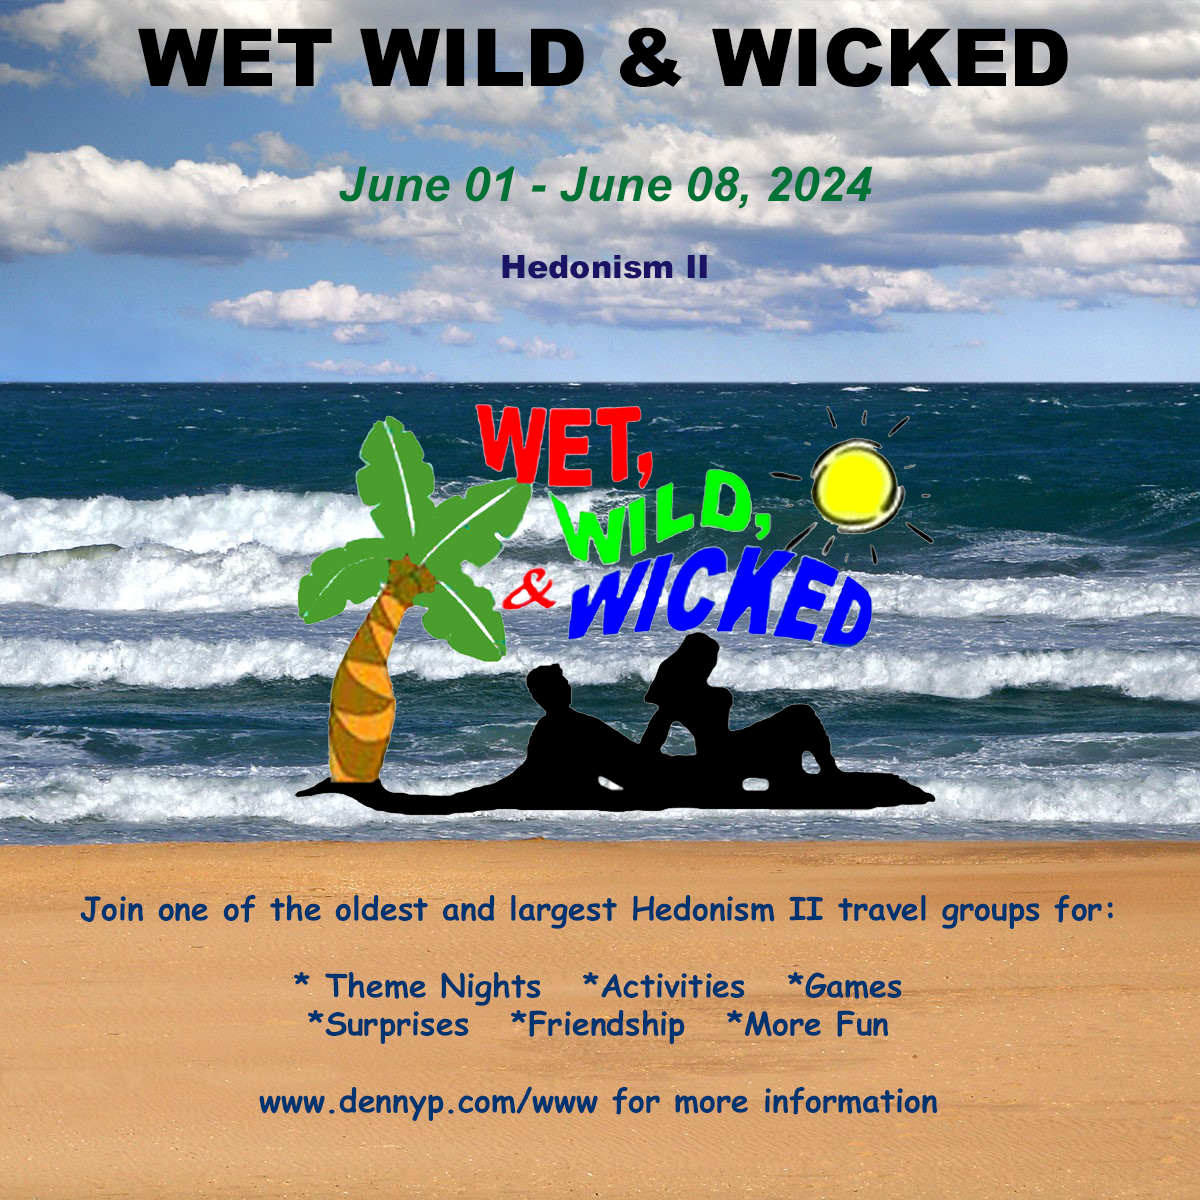 Group Event - Wet, Wild & Wicked - June 1 - 8, 2024 - Hedonism II Resort, Negril Jamaica